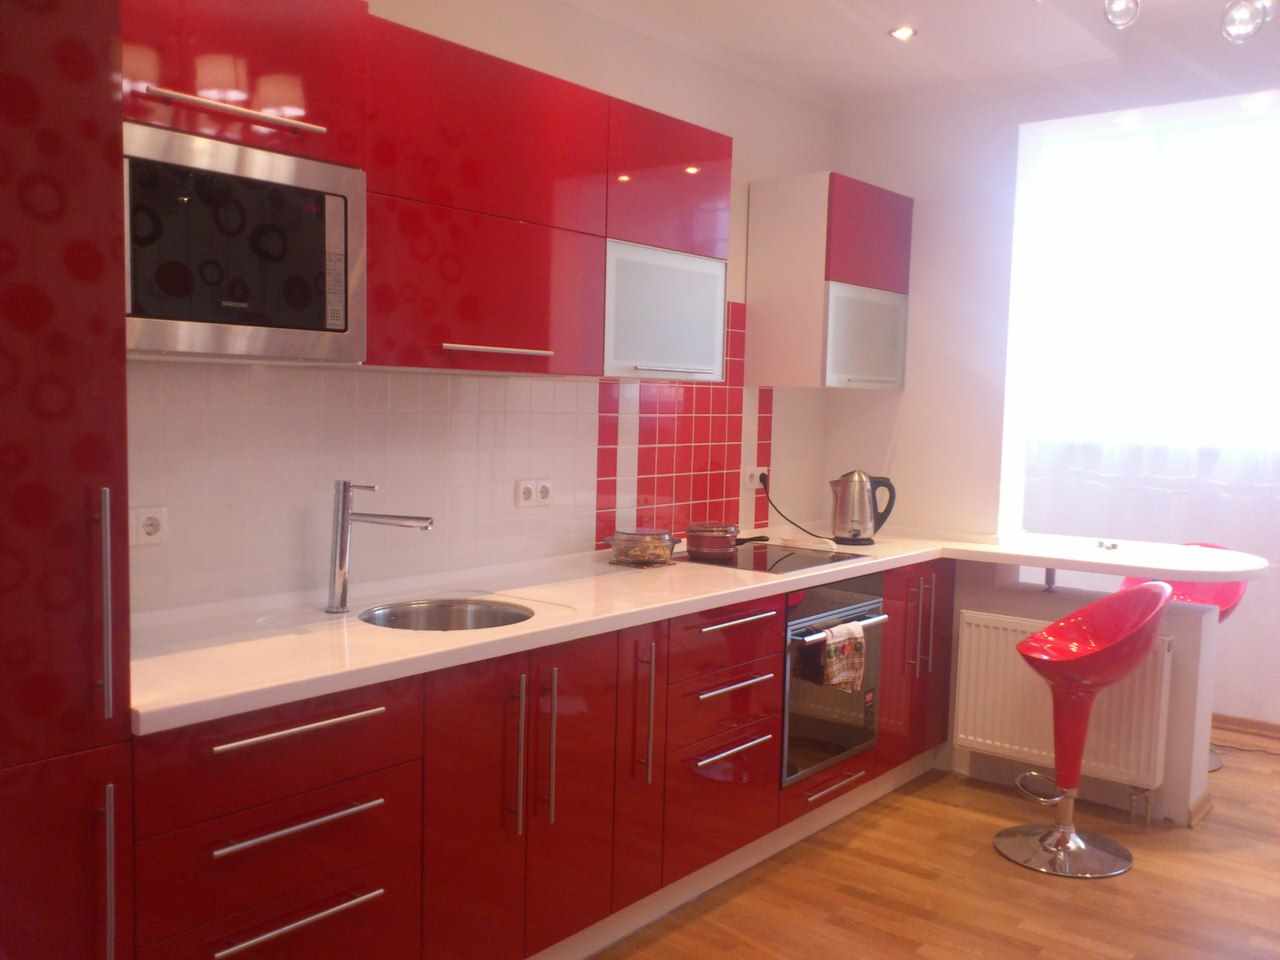 variantă a unui frumos decor din bucătăria roșie